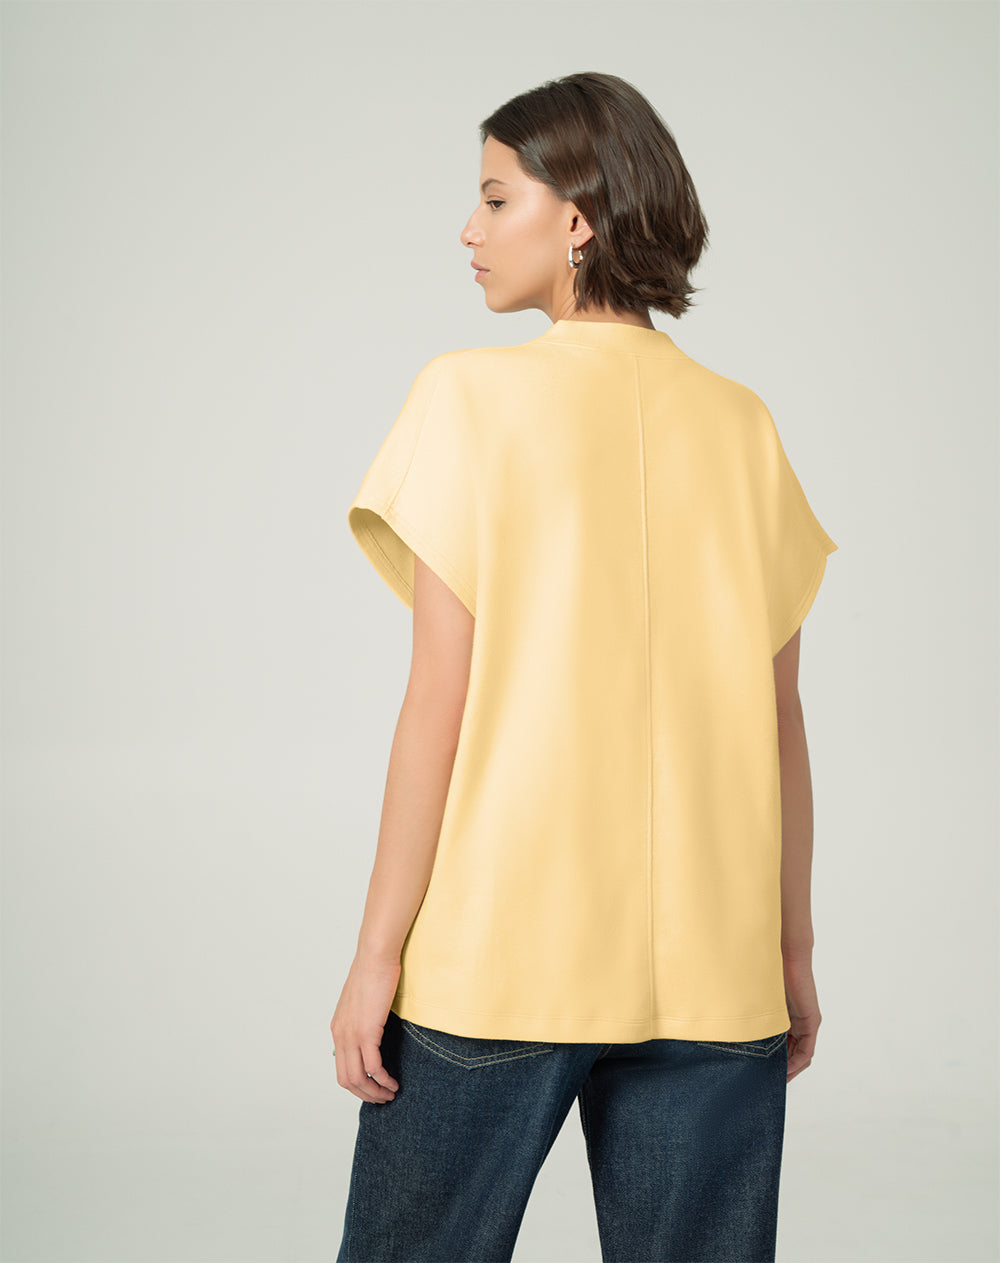 Camiseta new turi  oversized fit manga corta amarilla